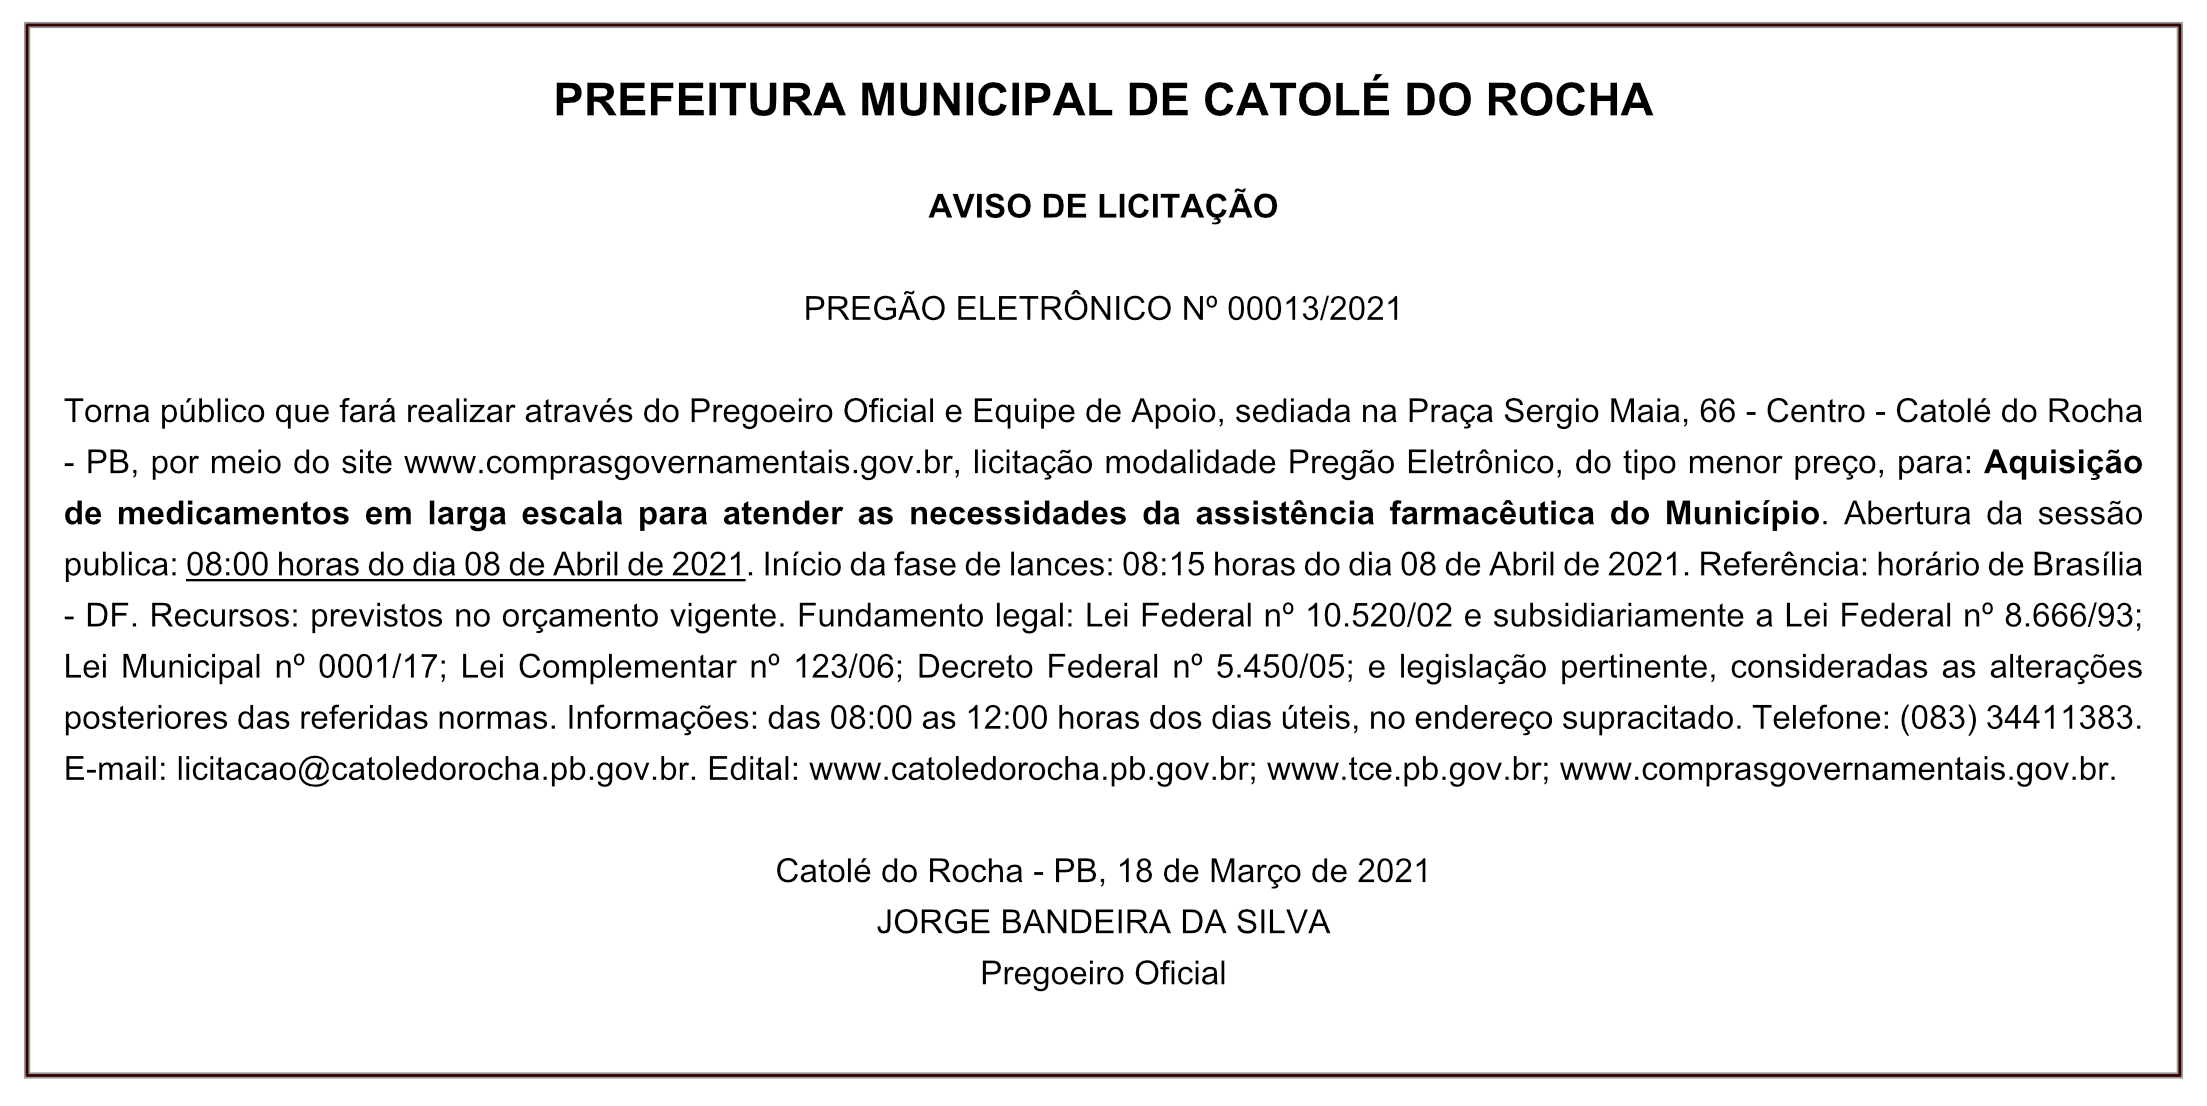 PREFEITURA MUNICIPAL DE CATOLÉ DO ROCHA – AVISO DE LICITAÇÃO- PREGÃO ELETRÔNICO Nº 00013/2021